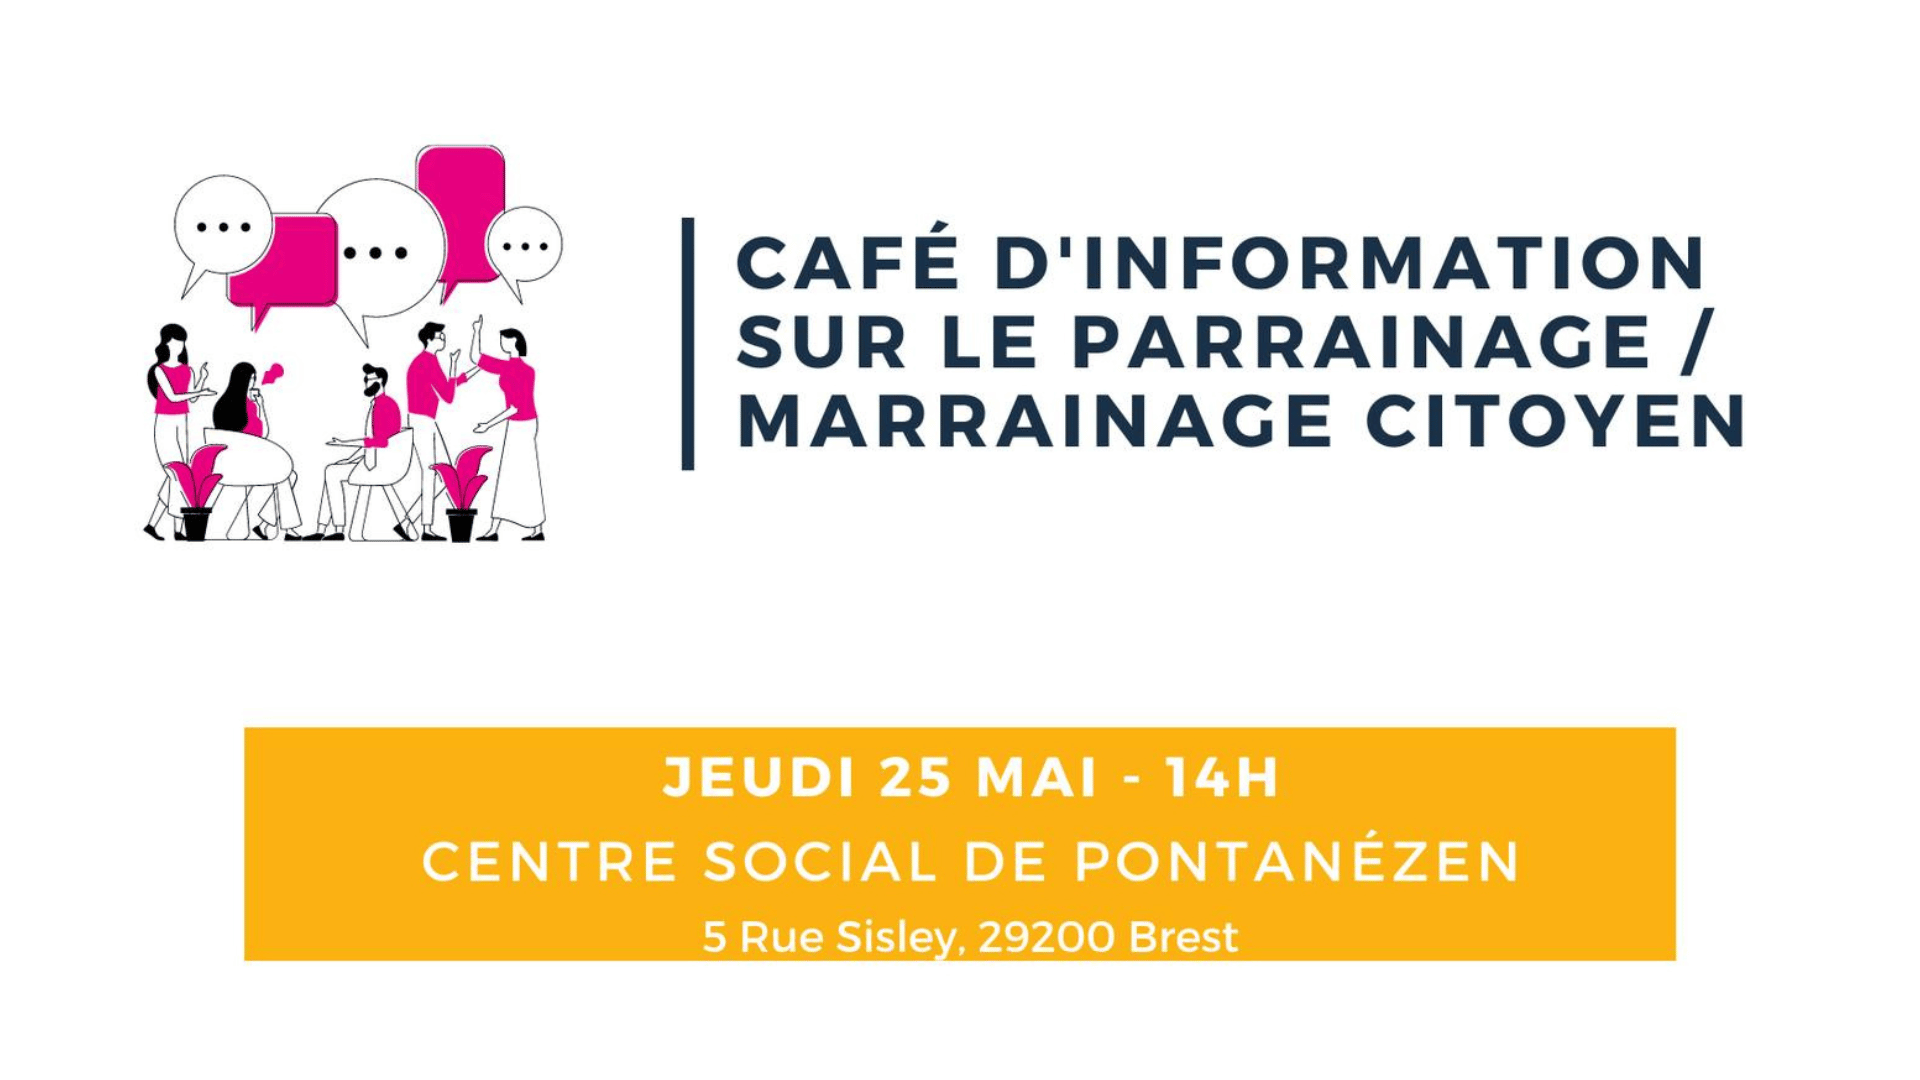 You are currently viewing Défis emploi : Café d’information sur le marrainage/parrainage citoyen